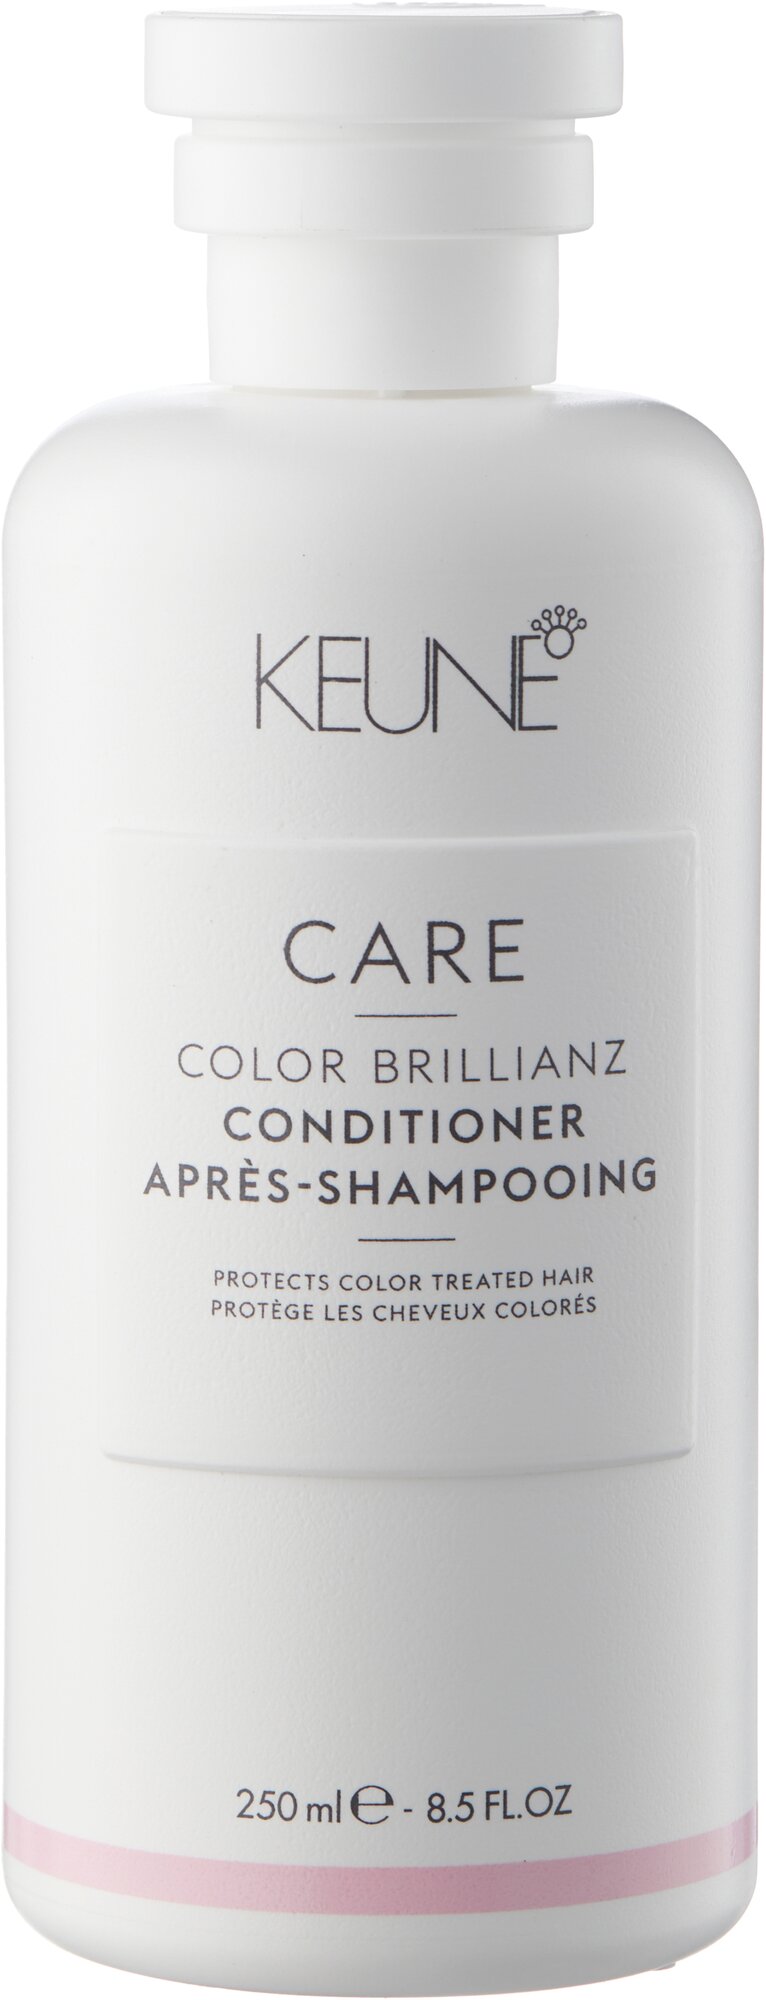 Keune кондиционер Care Color Brillianz для окрашенных волос, 250 мл